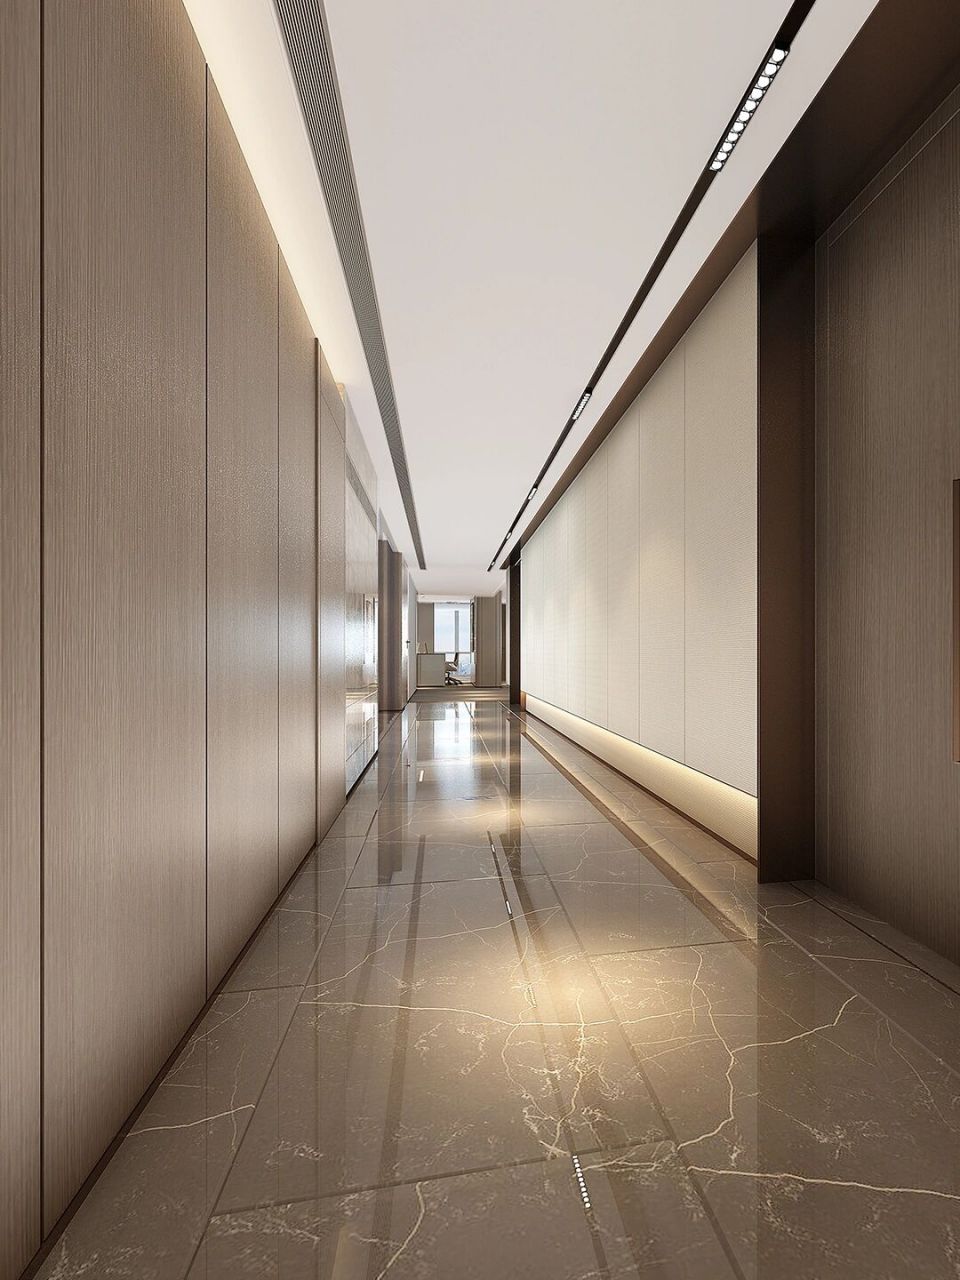 分享现代高级简约办公室过道走廊设计